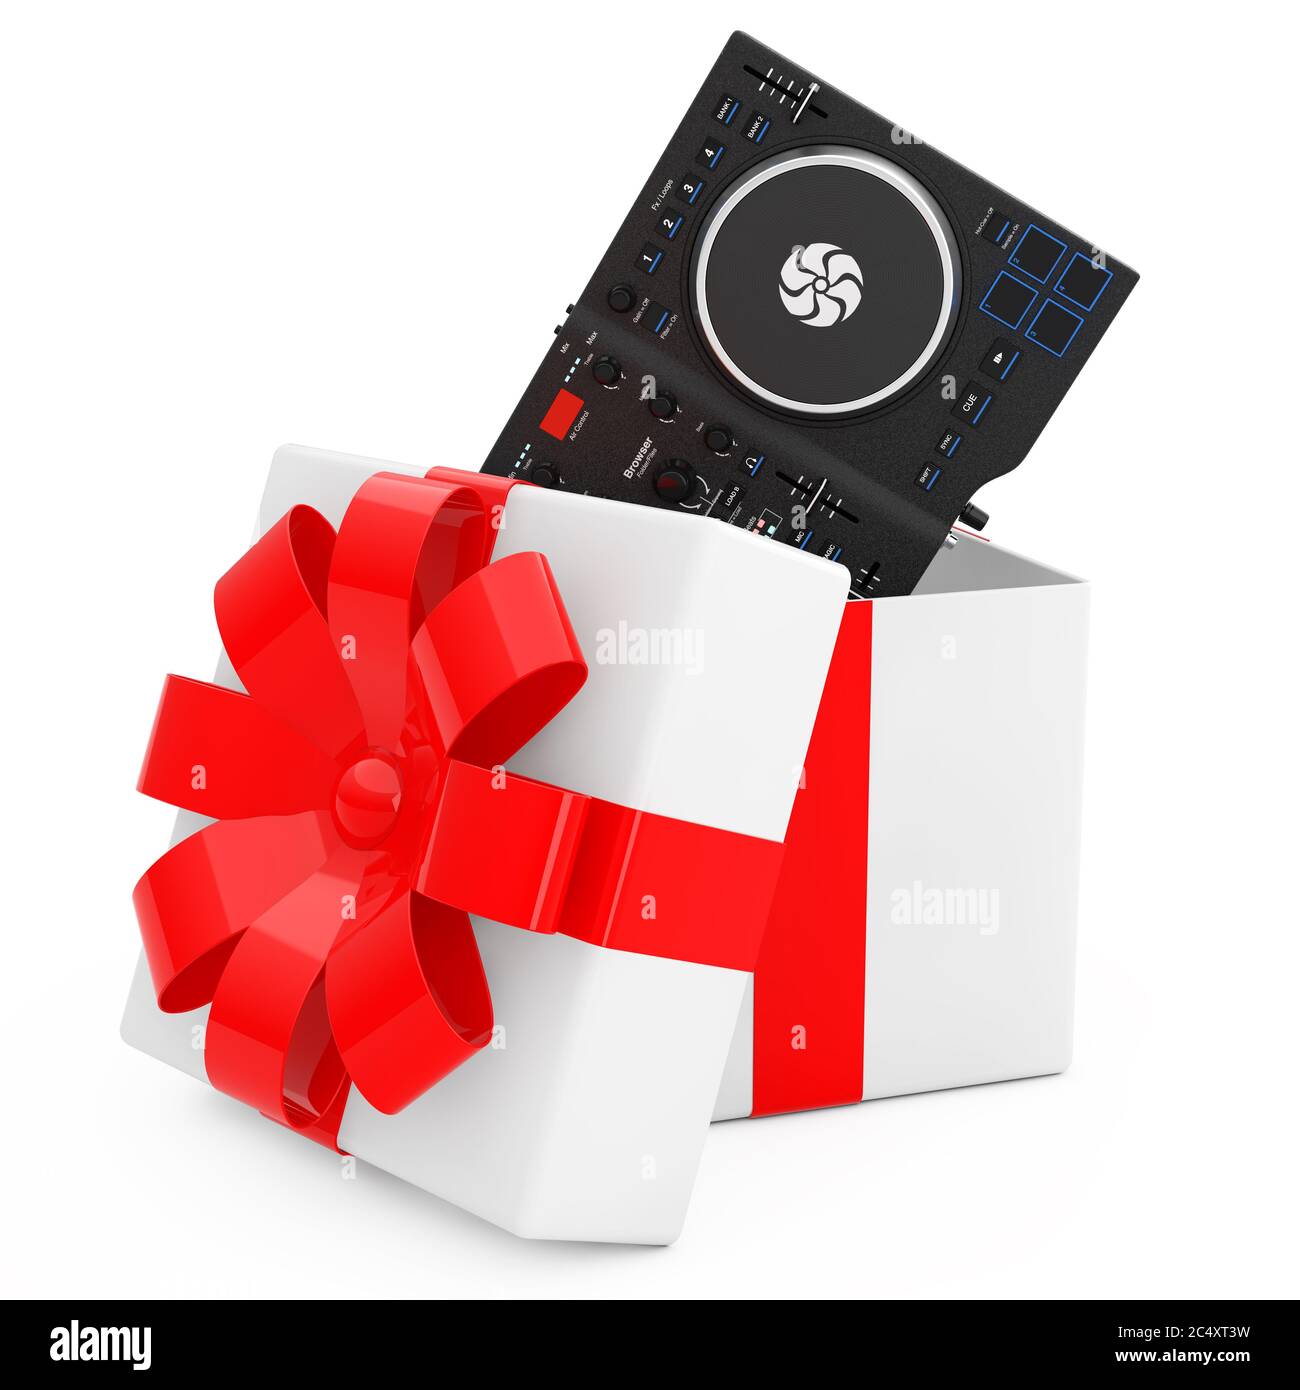 Ensemble de DJ moderne noir mélangeur plateau sortir de la boîte cadeau avec ruban rouge sur fond blanc. Rendu 3d Banque D'Images